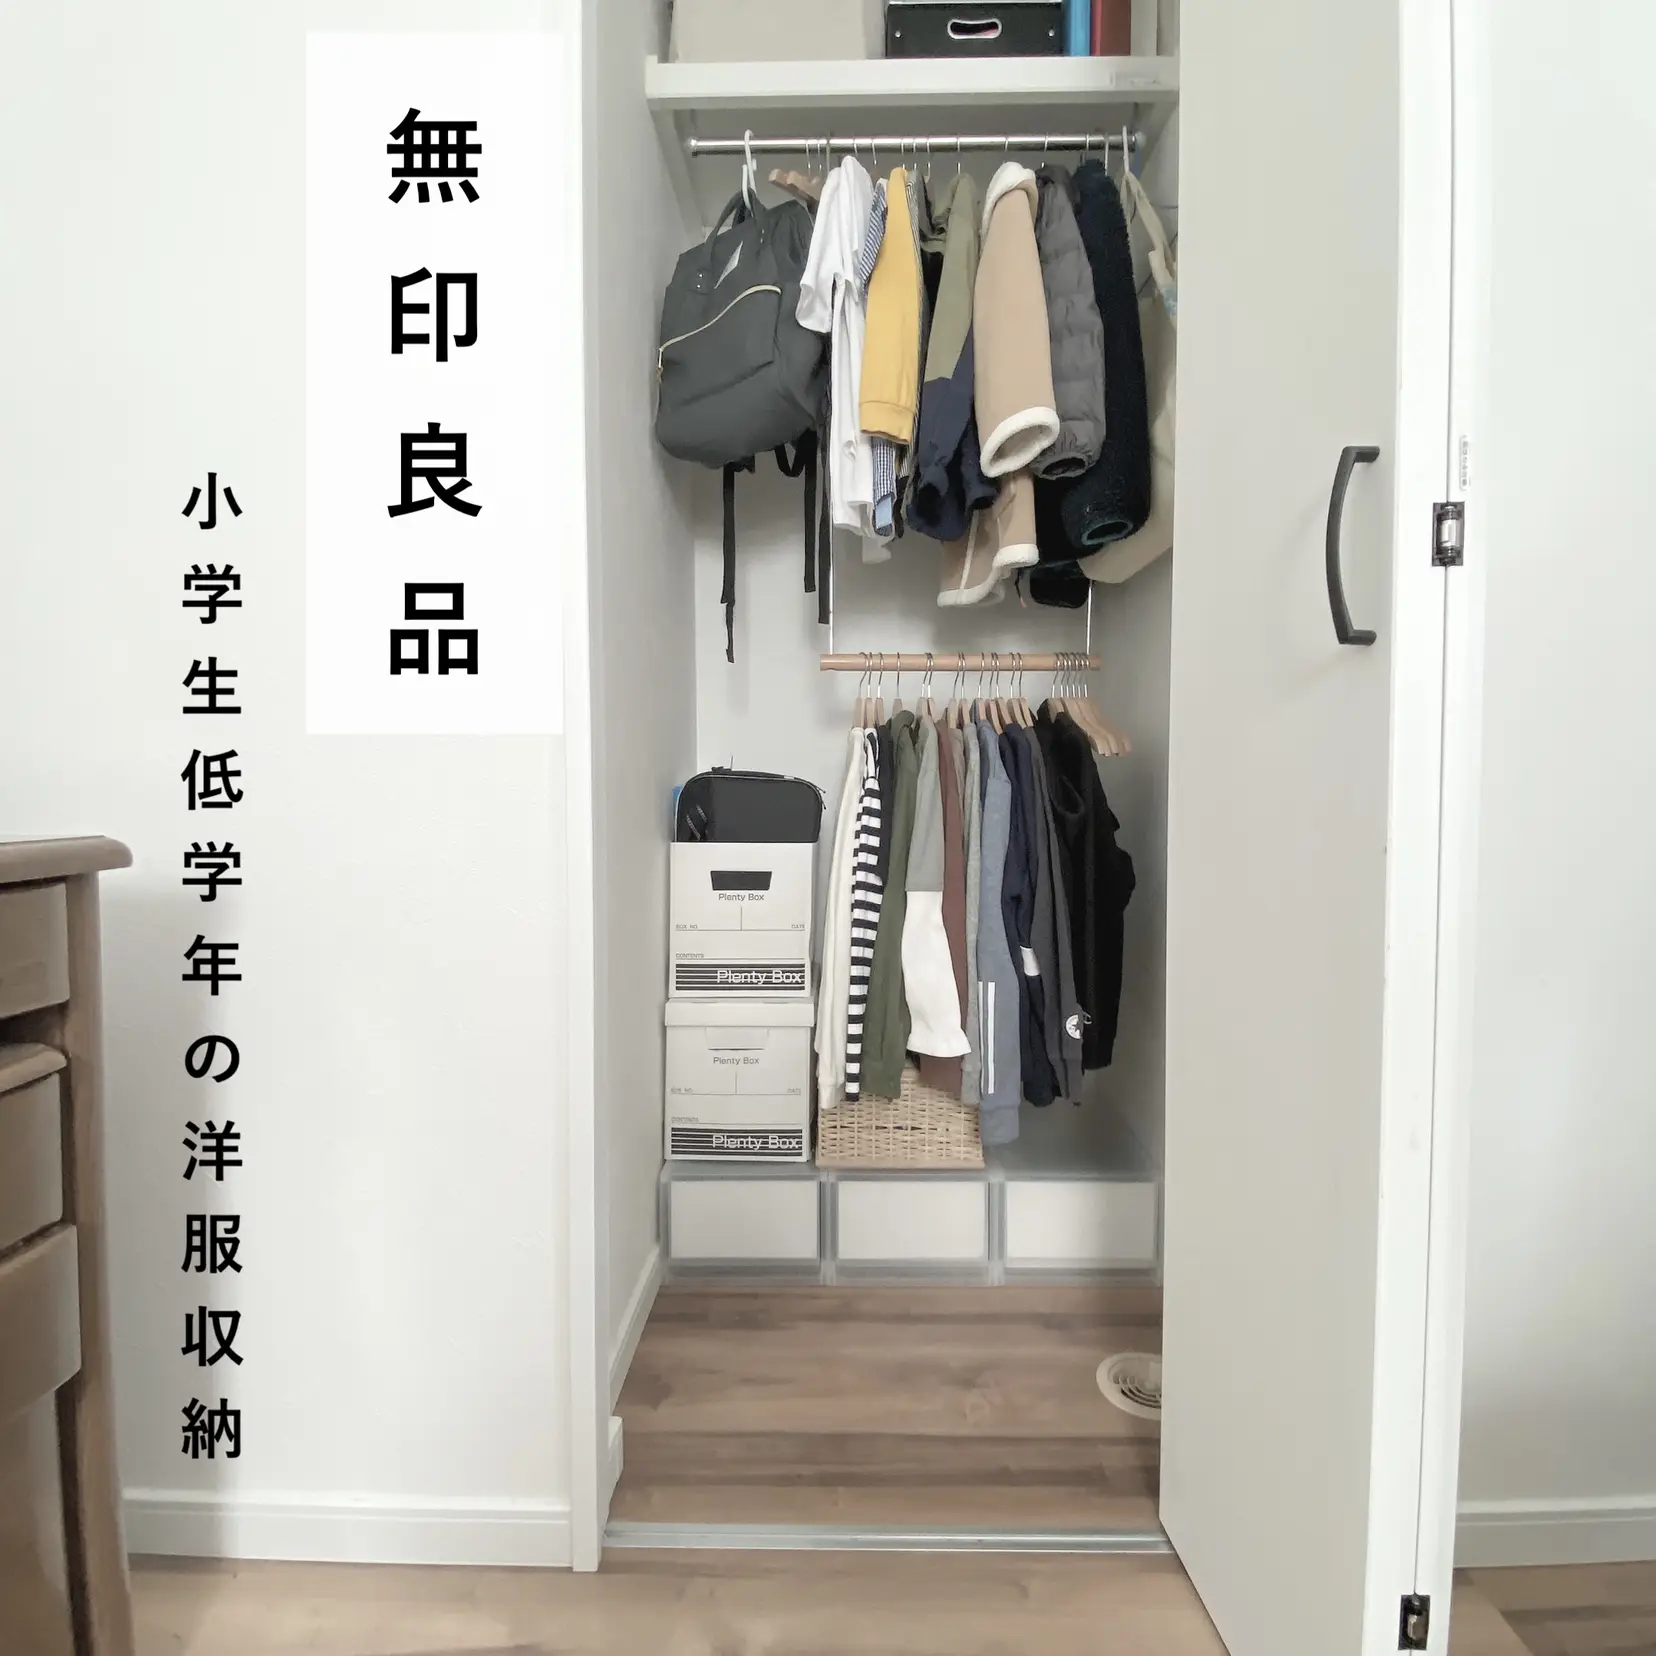 小学生男子、洋服収納 「無印良品」 | yu.i_homeが投稿したフォト